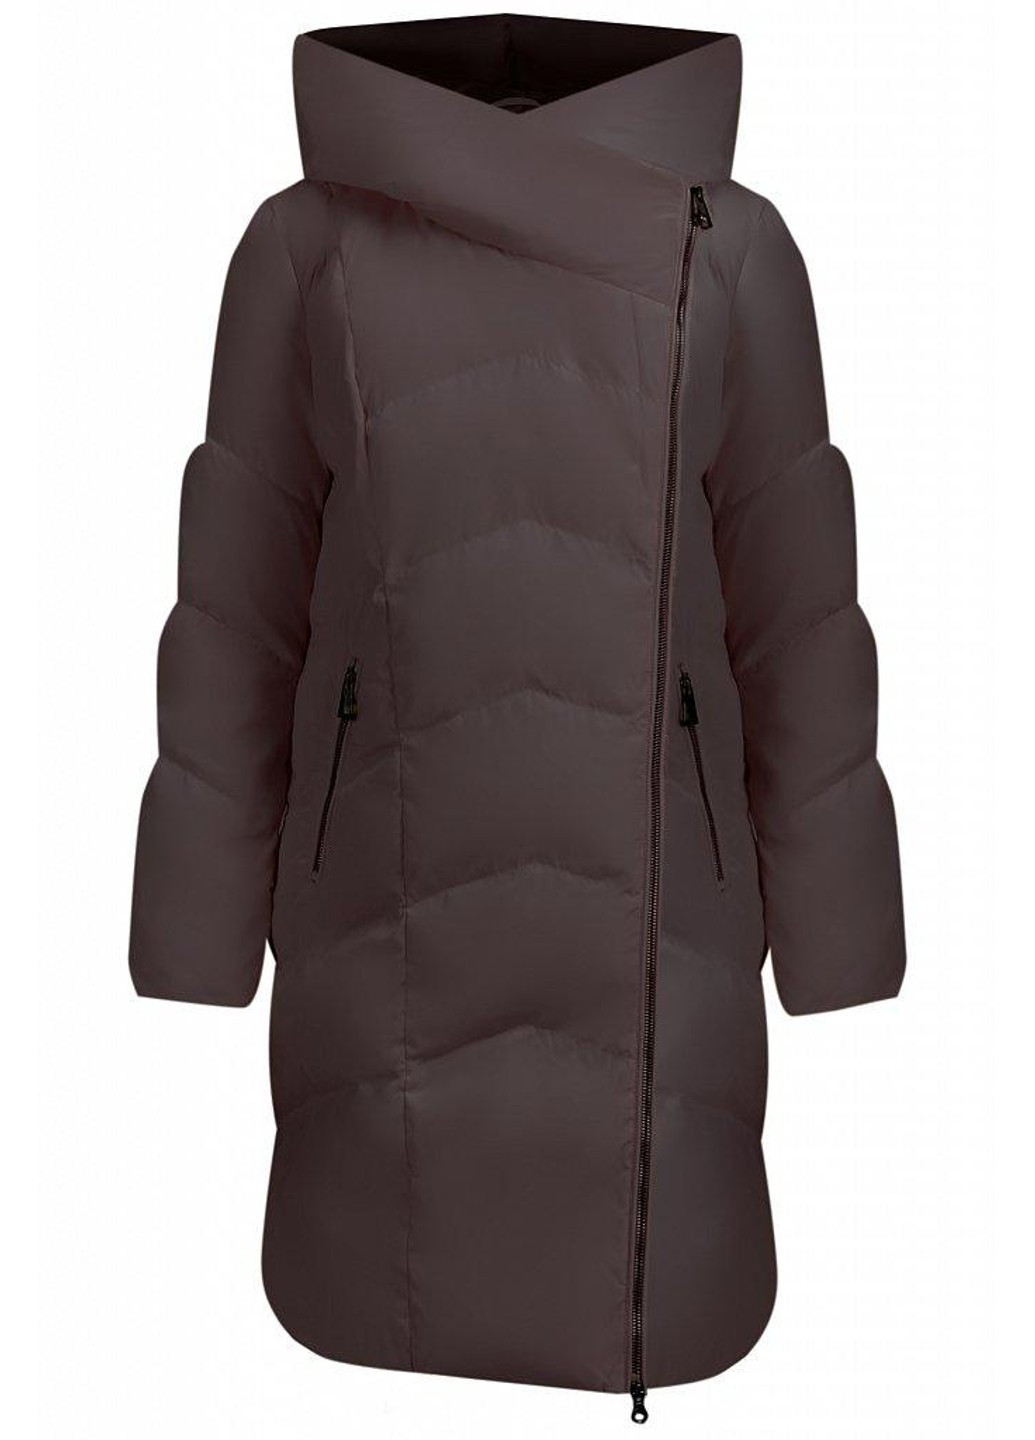 Темно-сіра зимня зимова куртка a19-11010-202 Finn Flare